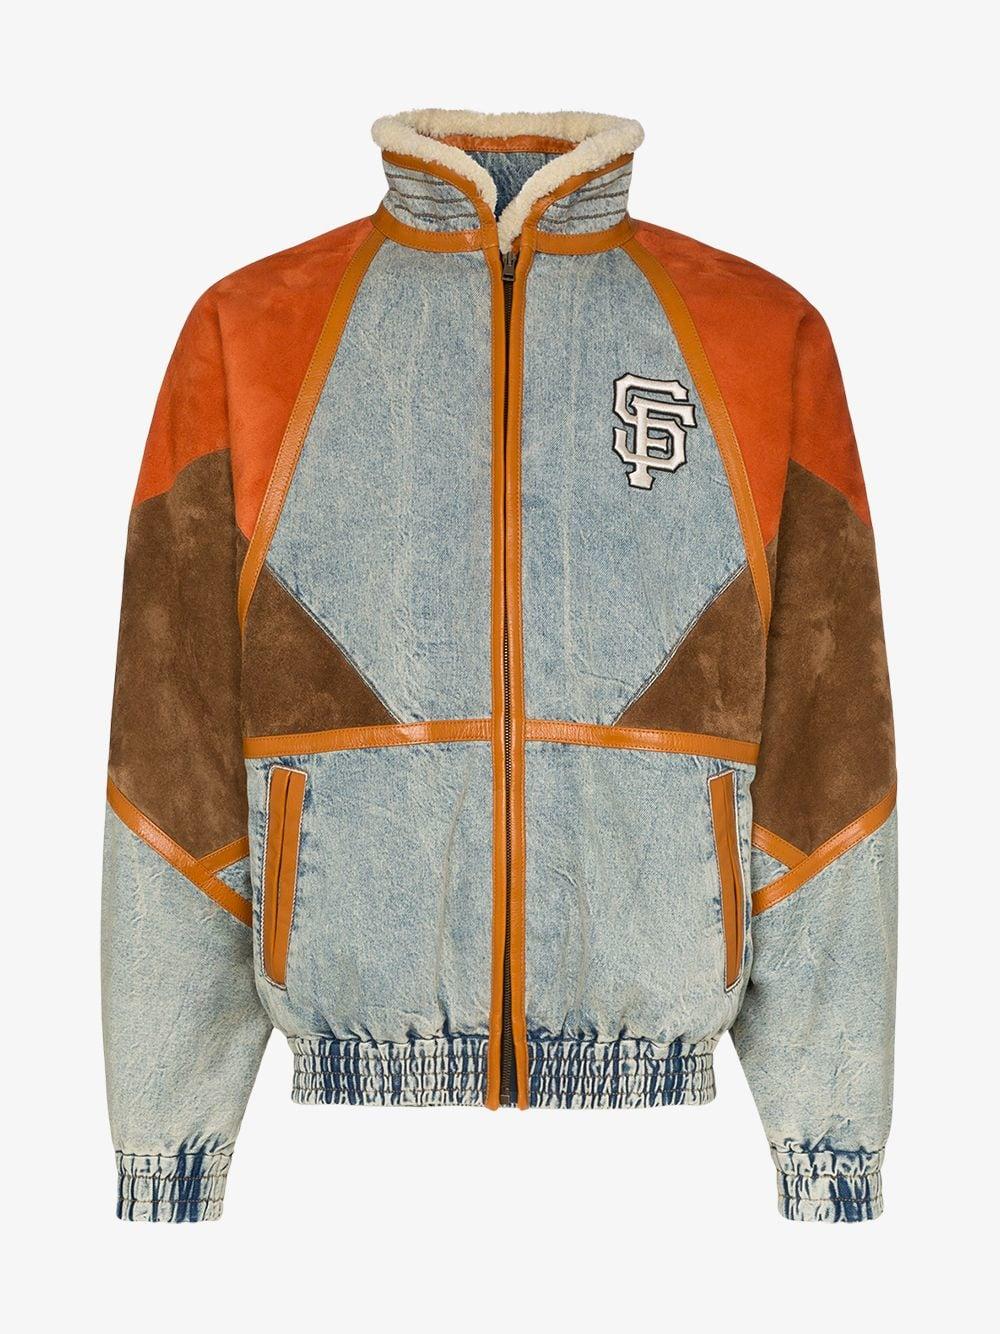 sf giants jacket